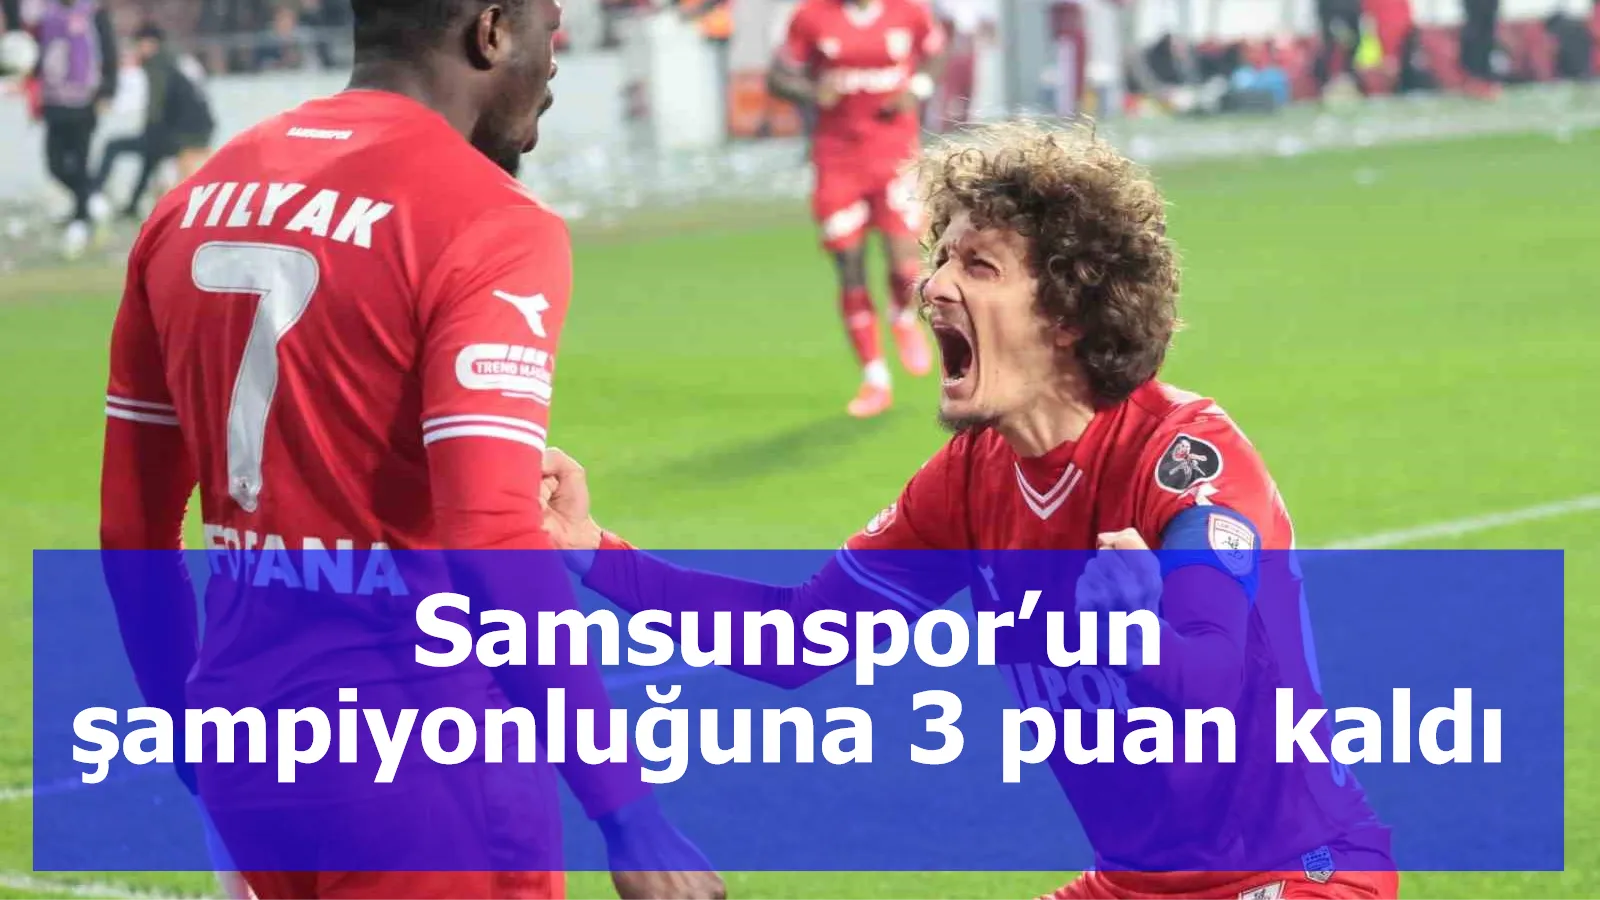 Samsunspor’un şampiyonluğuna 3 puan kaldı